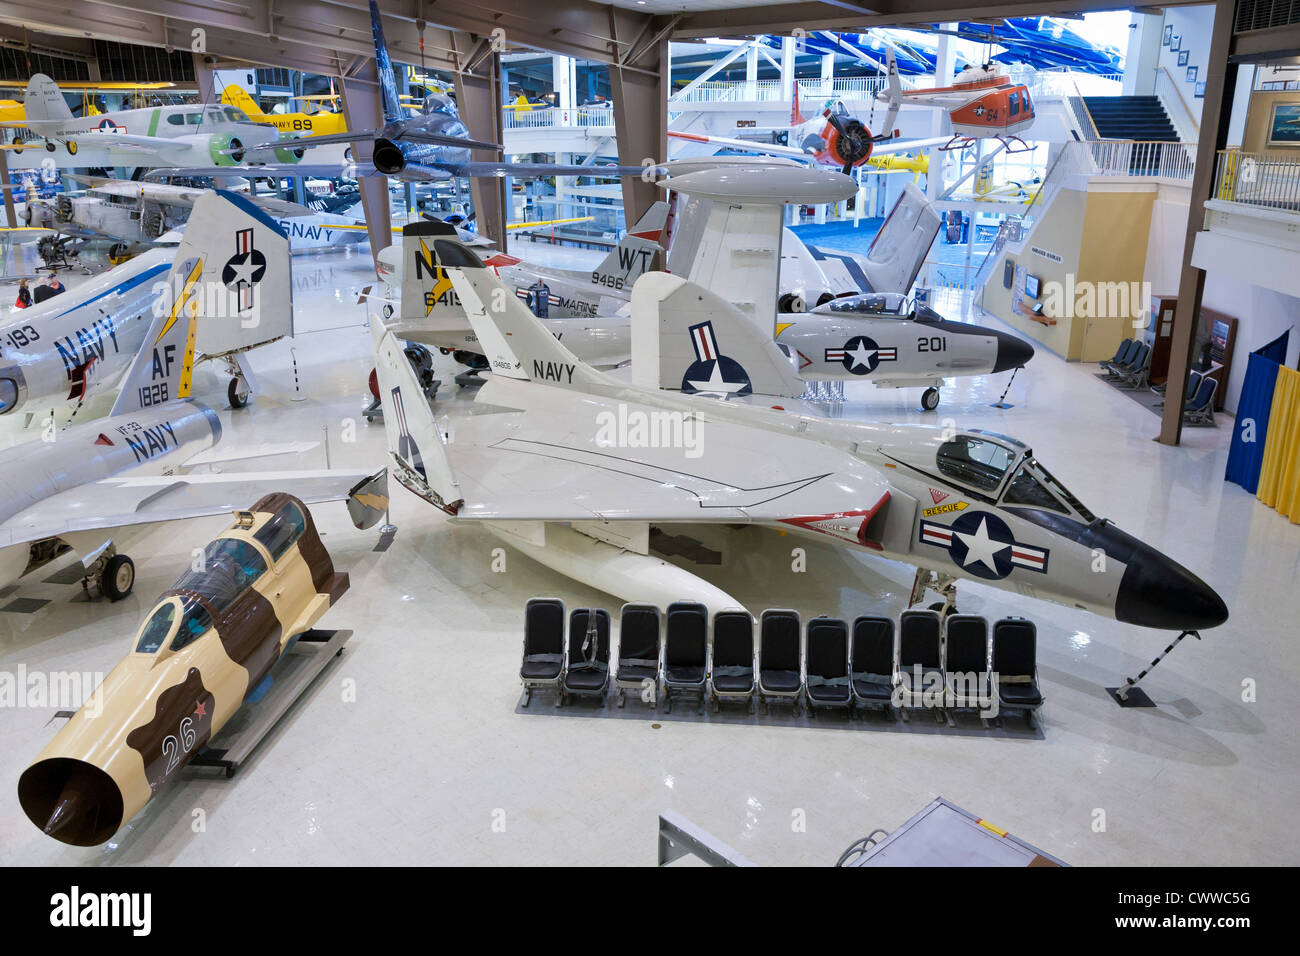 Variété d'avions de la Marine et d'autres aéronefs en exposition au Musée national de l'aéronavale Pensacola, FL Banque D'Images